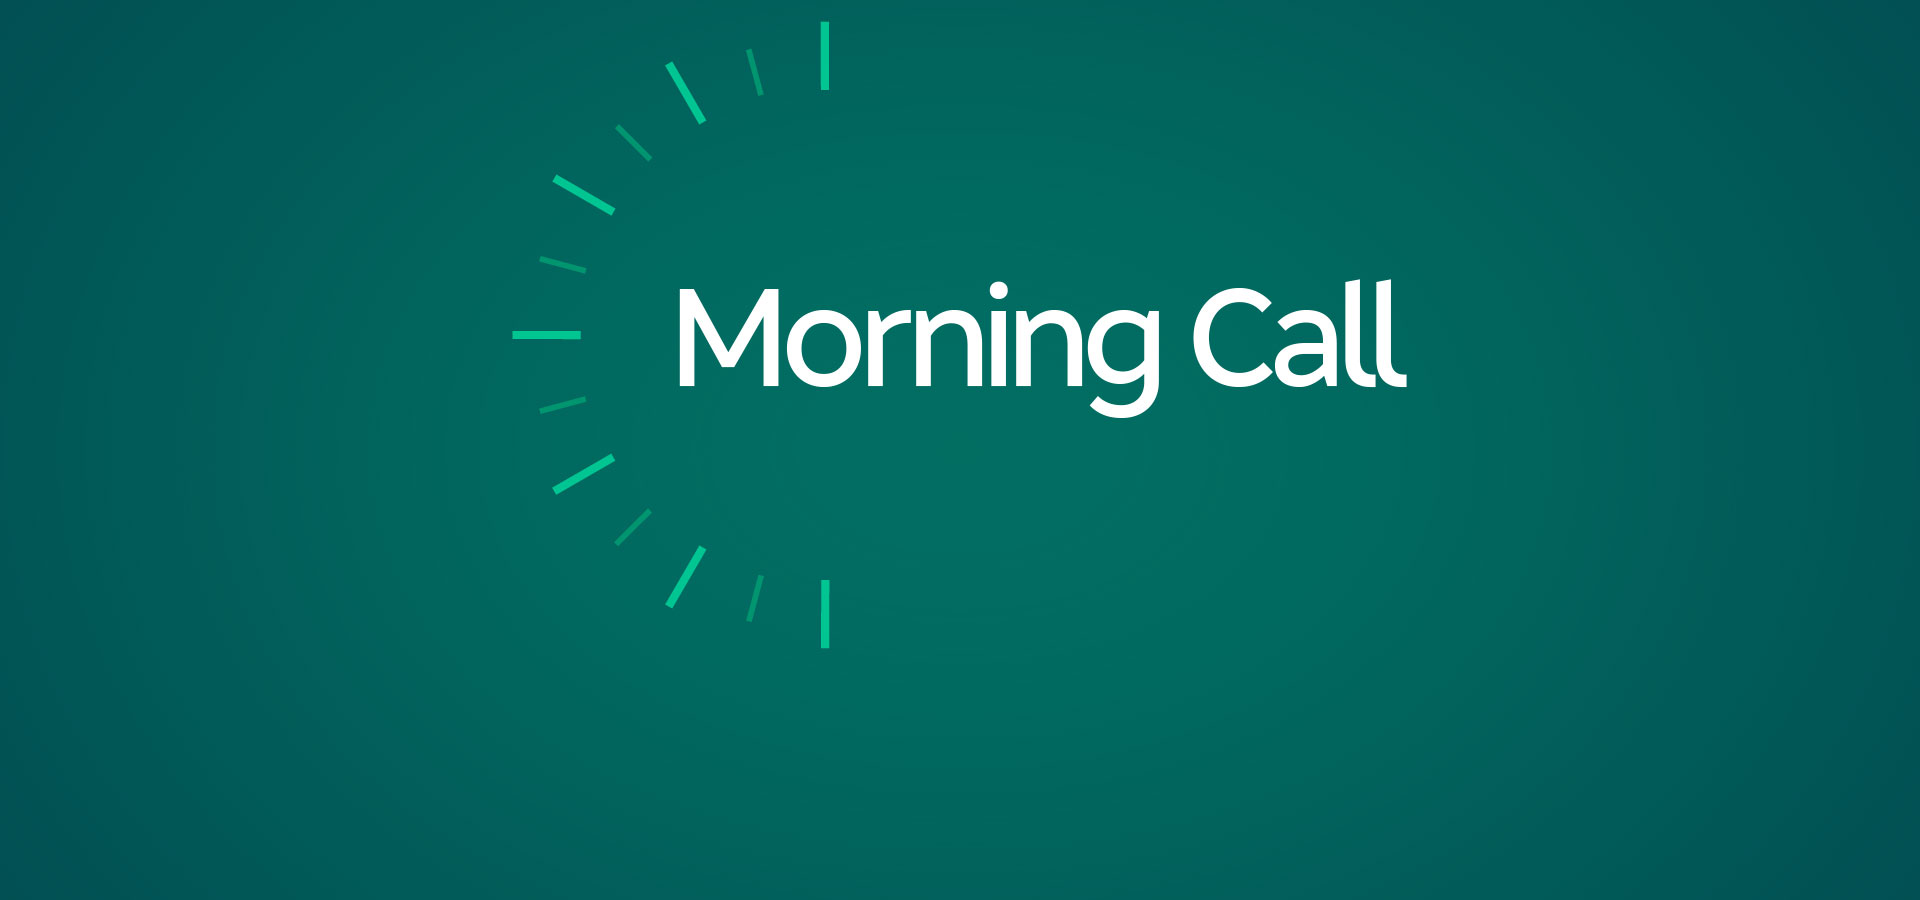 Morning Call – Day Trade e Swing Trade ao Vivo – Análise Gráfica - Índice, Dólar, Ações – 01/04